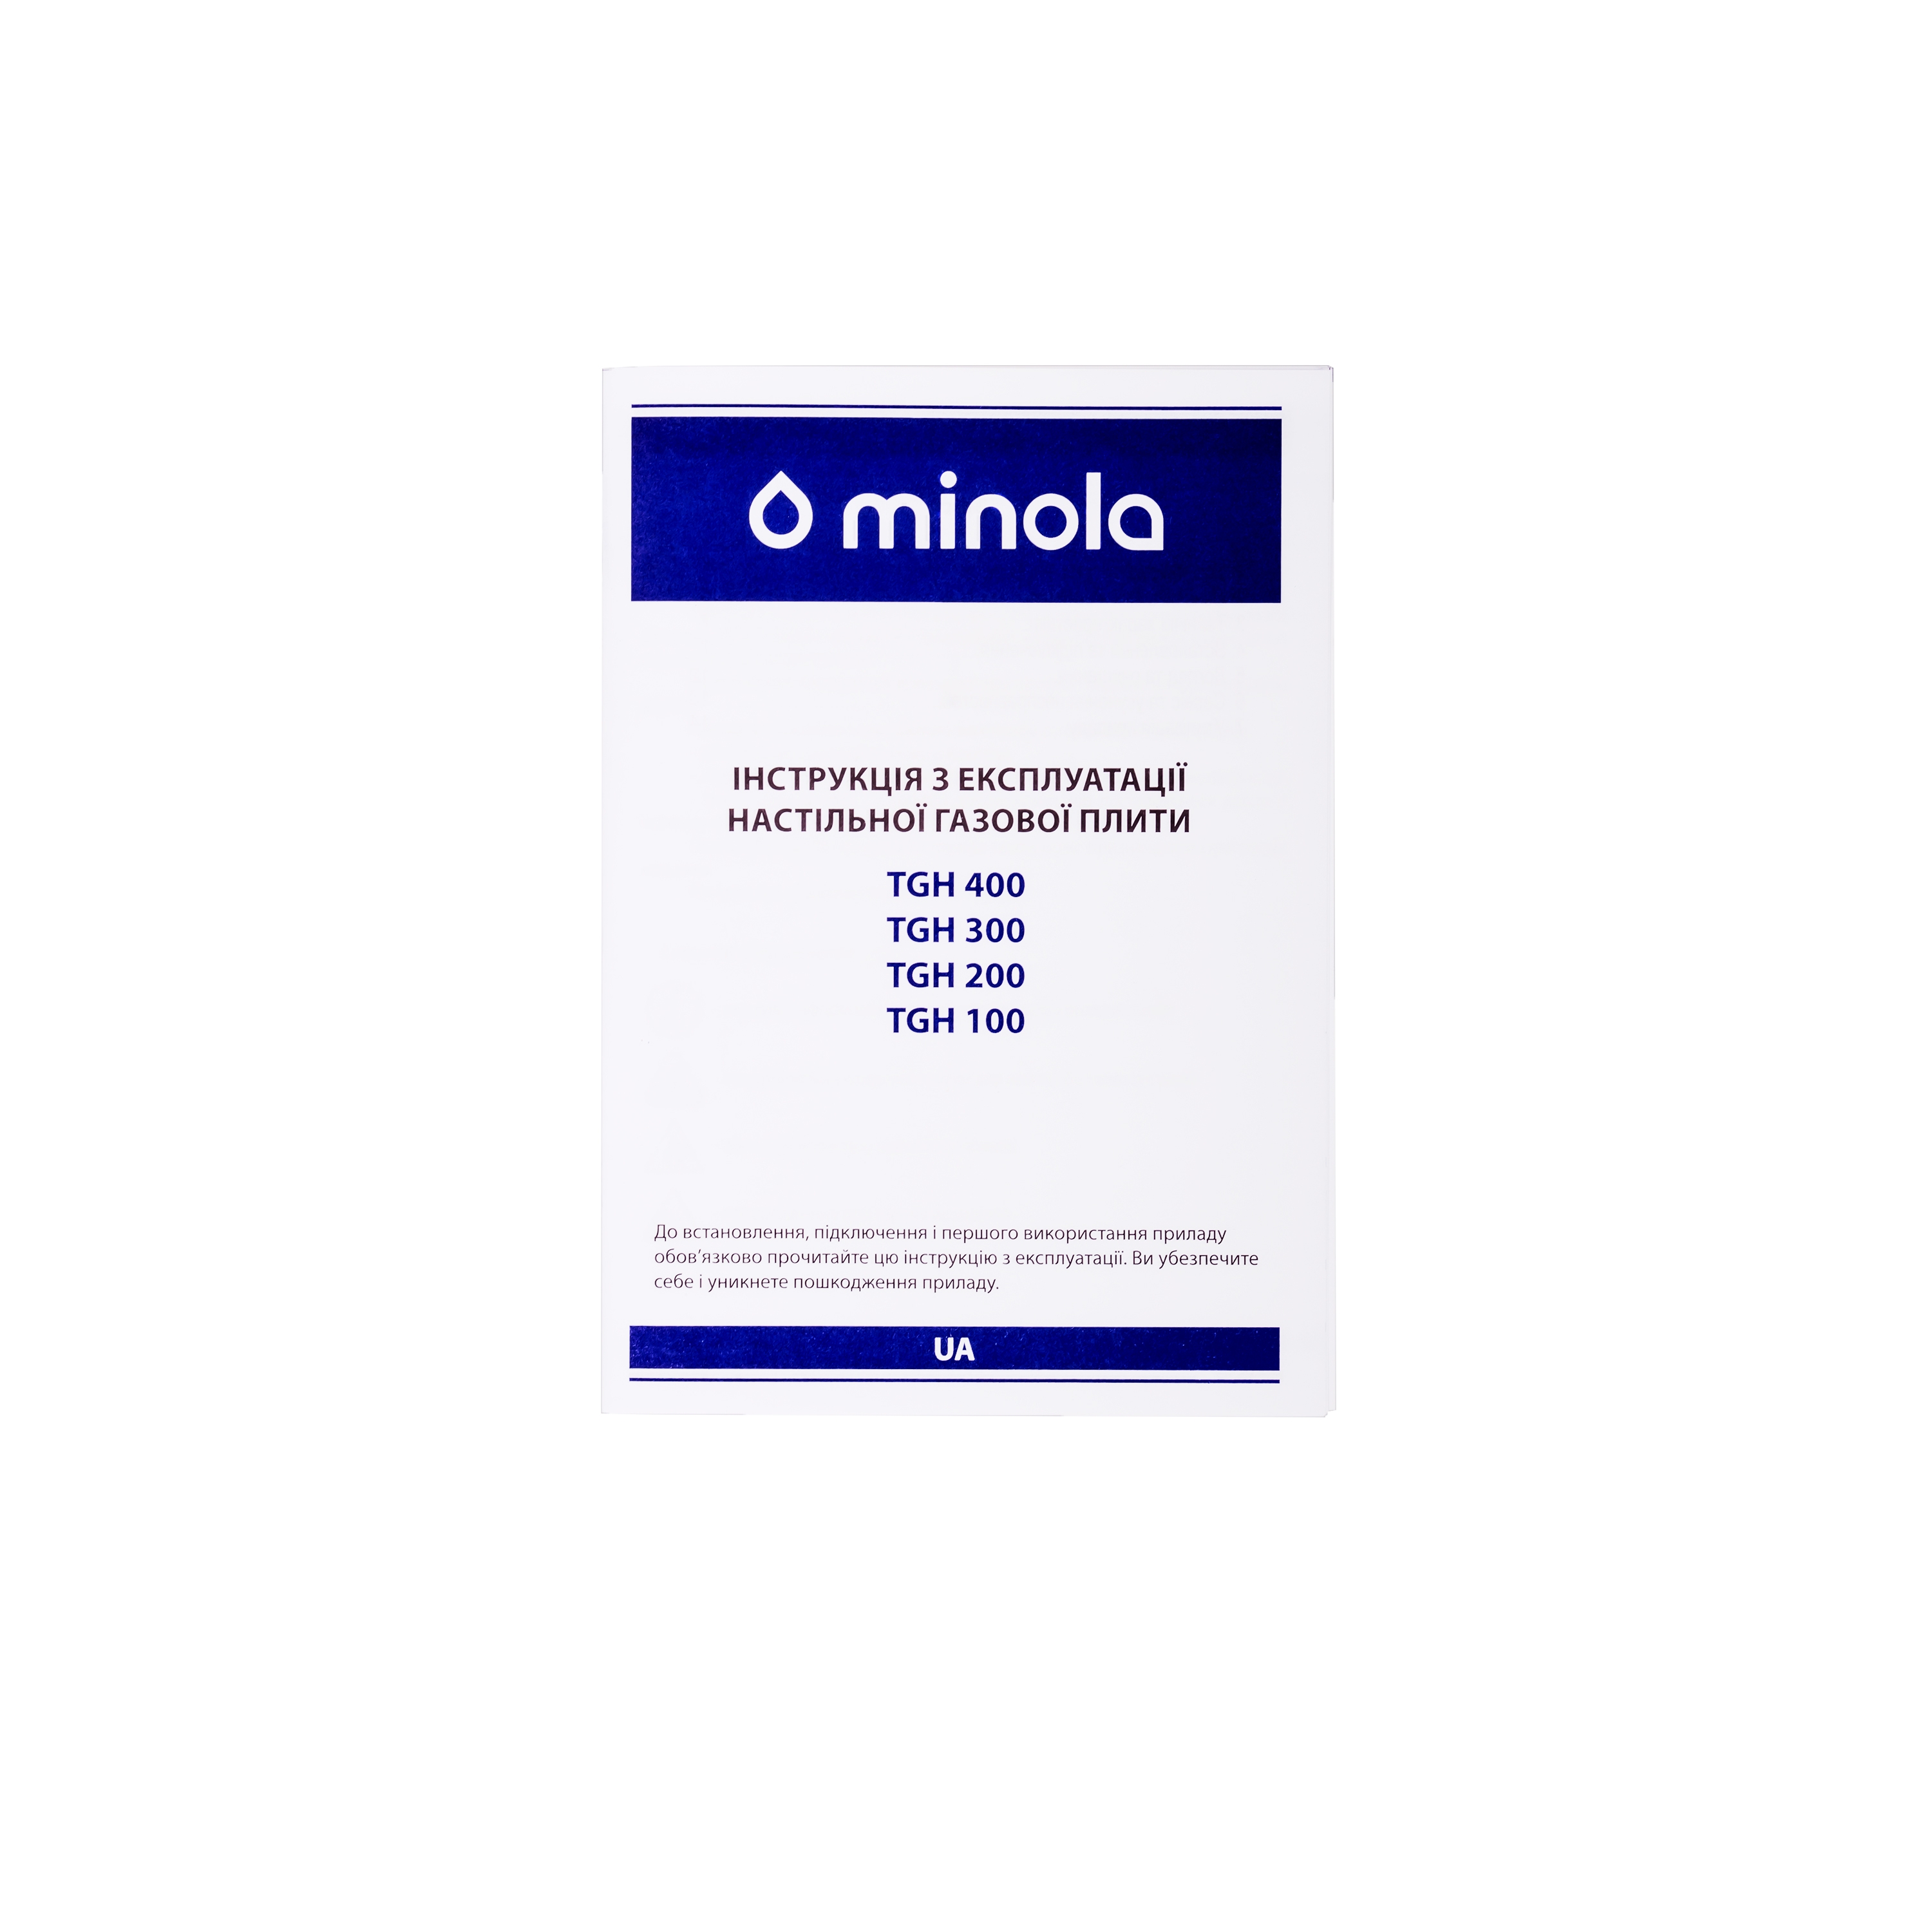 Плита настольная Minola TGH 100 BR отзывы - изображения 5